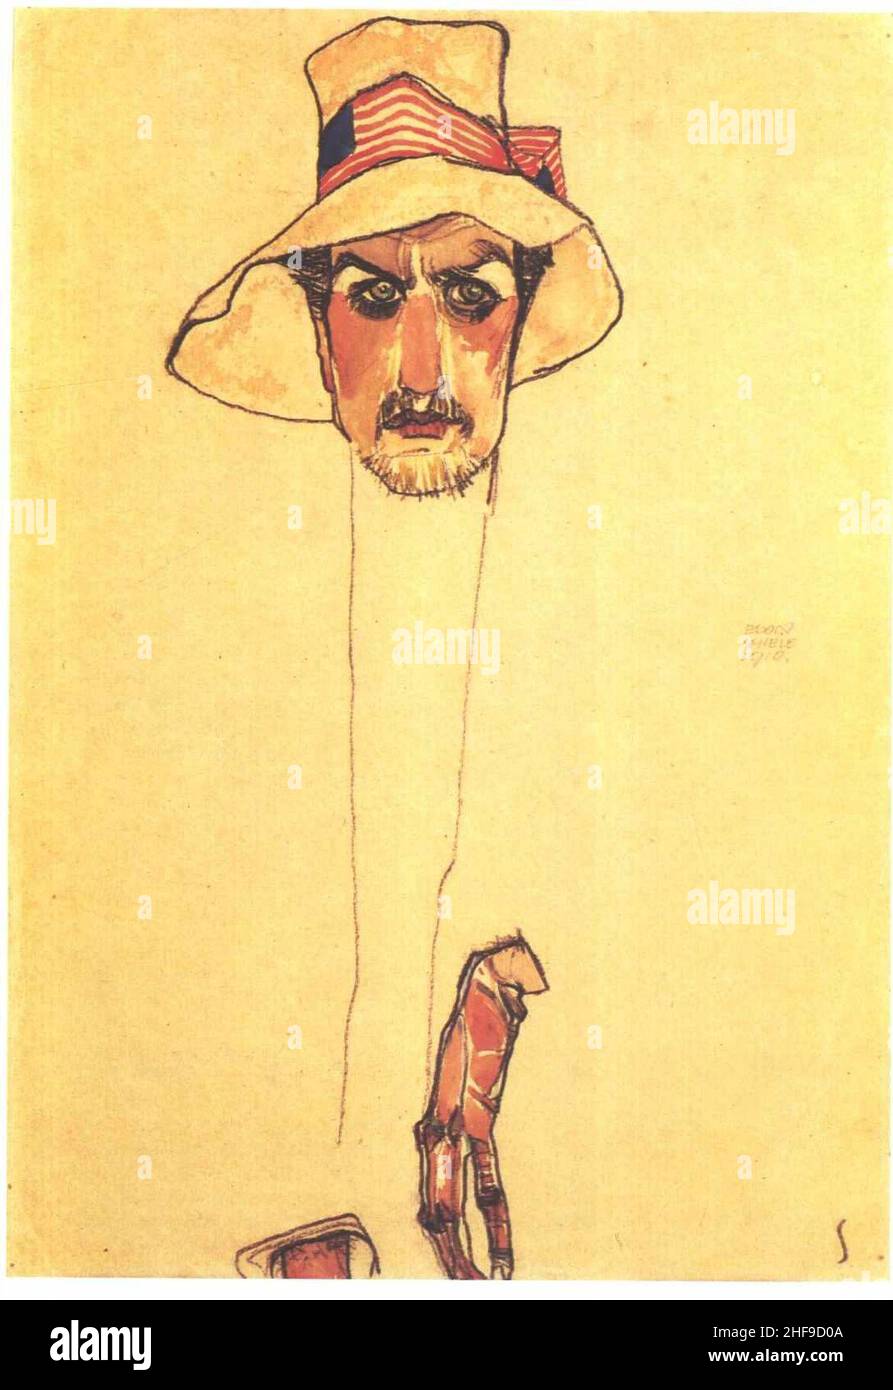 Schiele Männerporträt mit Schlapphut - 1910. Stock Photo